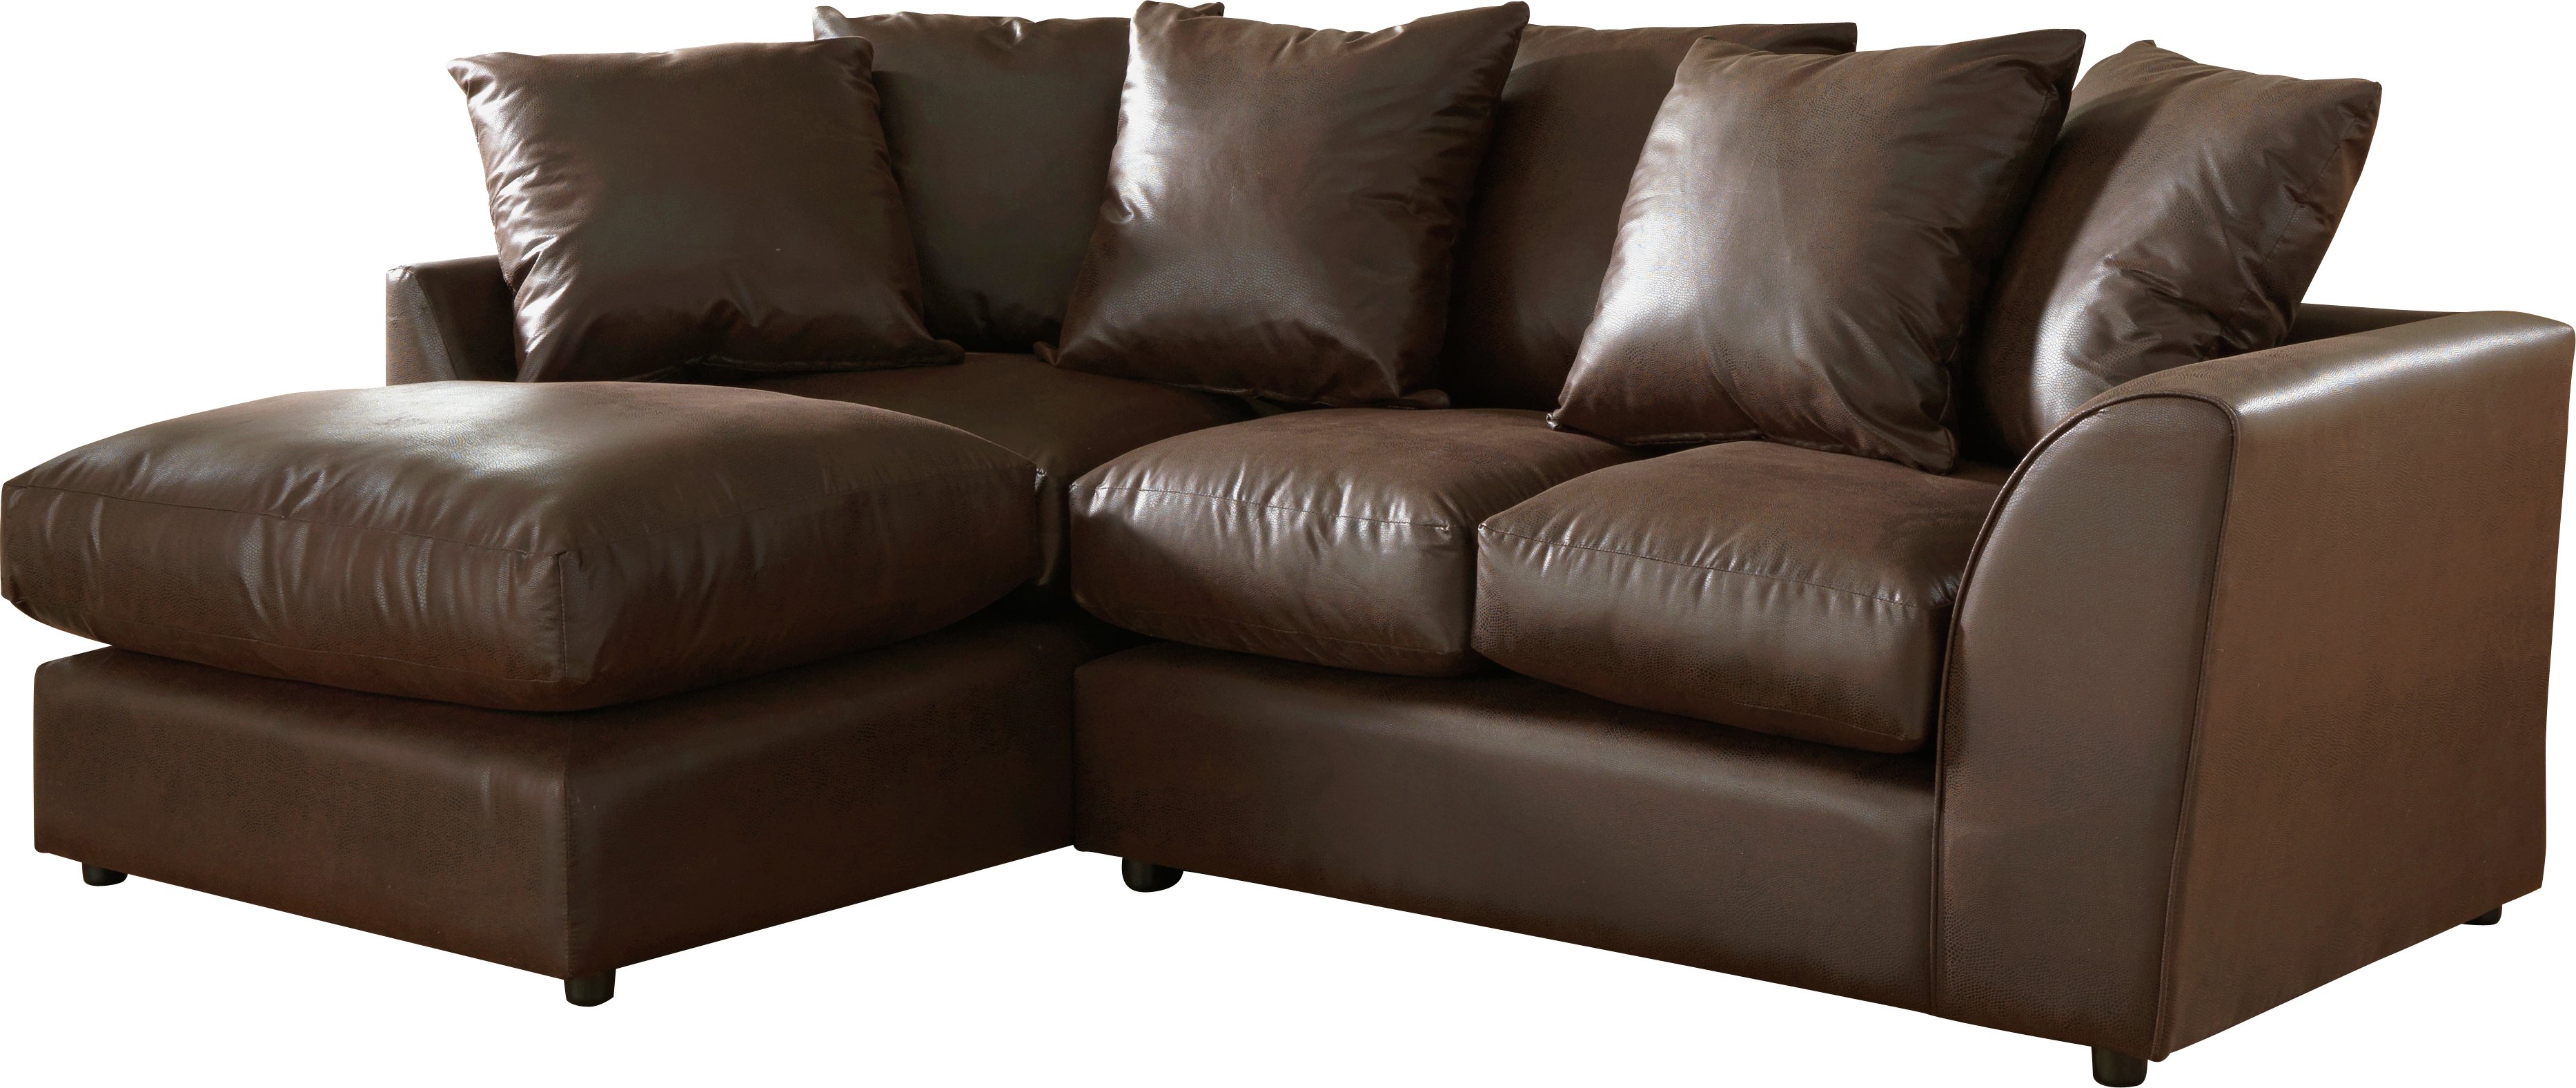 argos red leather corner sofa